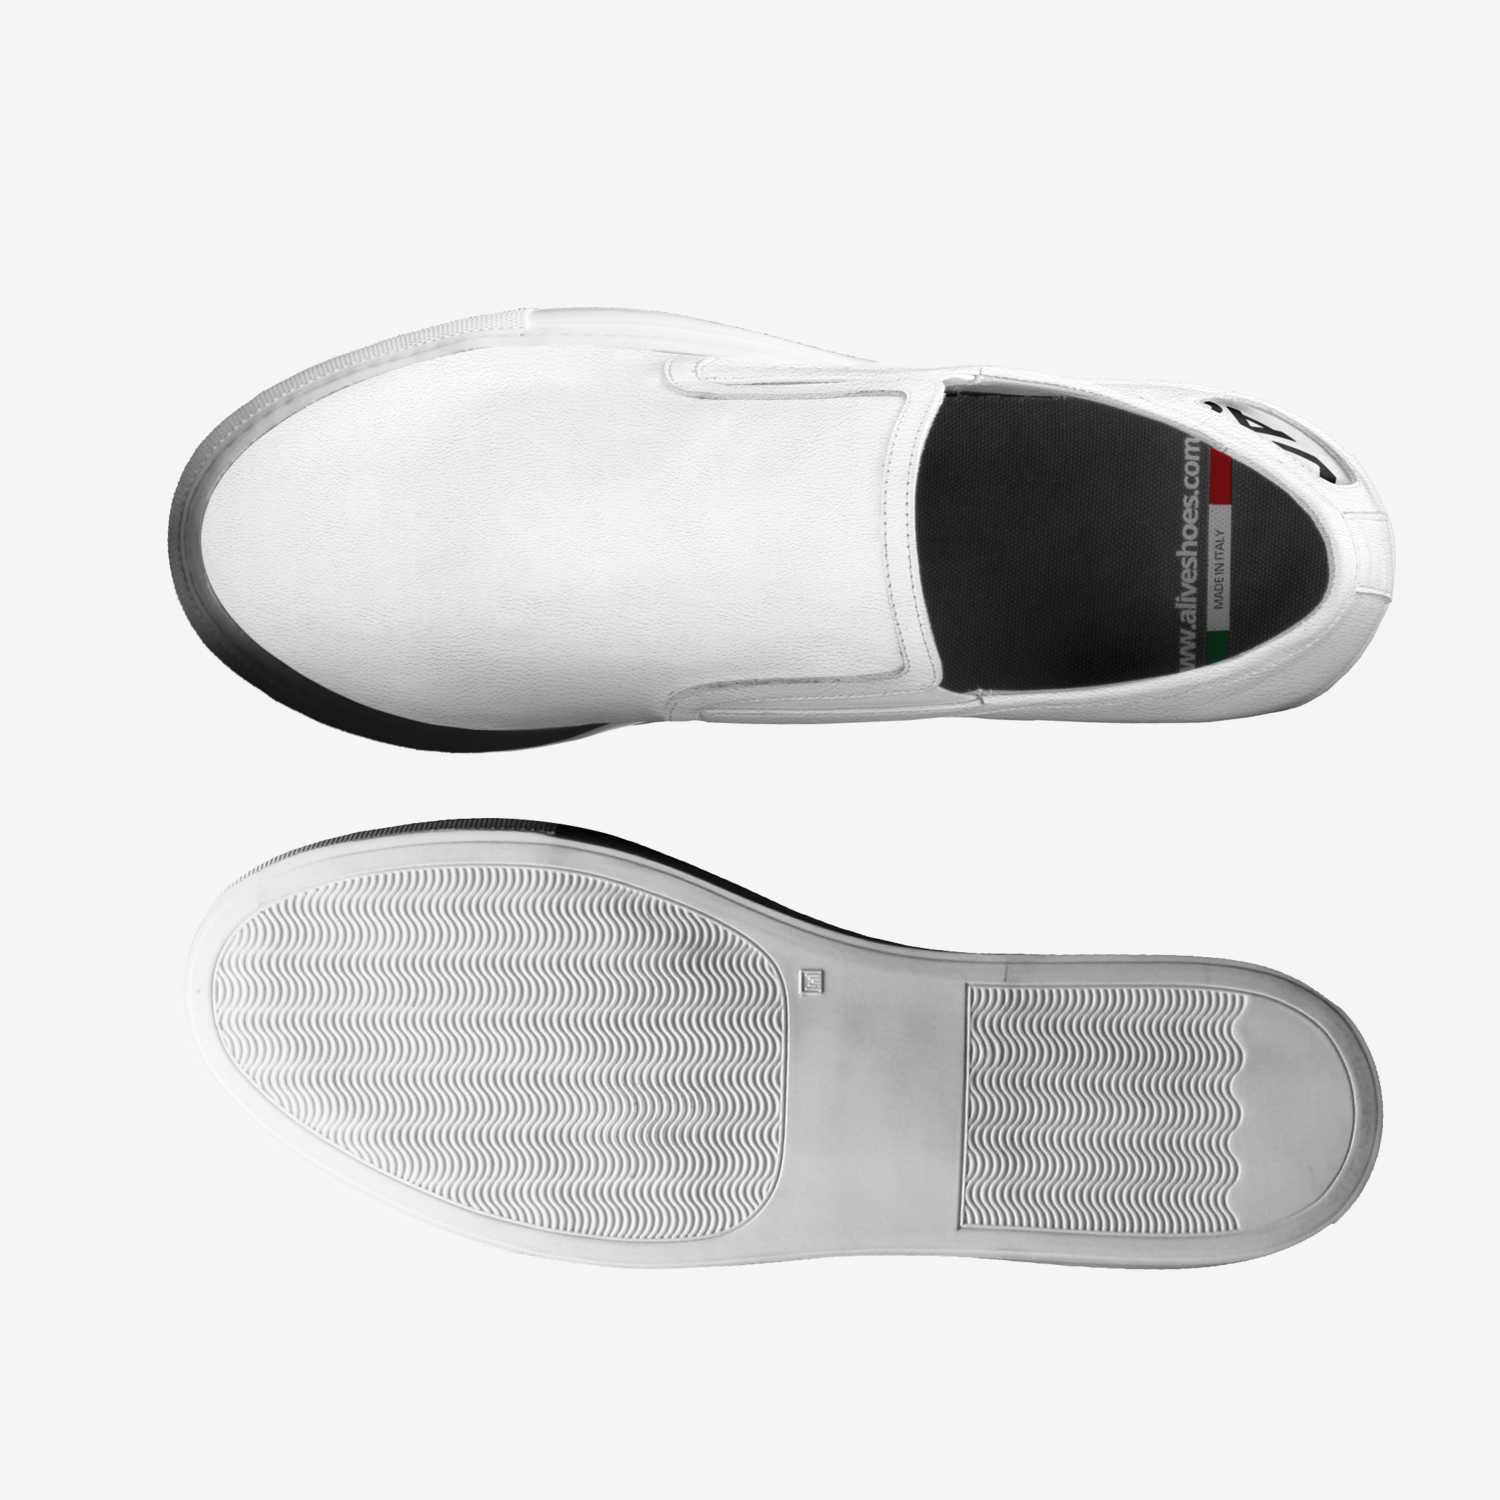 Vagabond A Shoe concept by Kasper